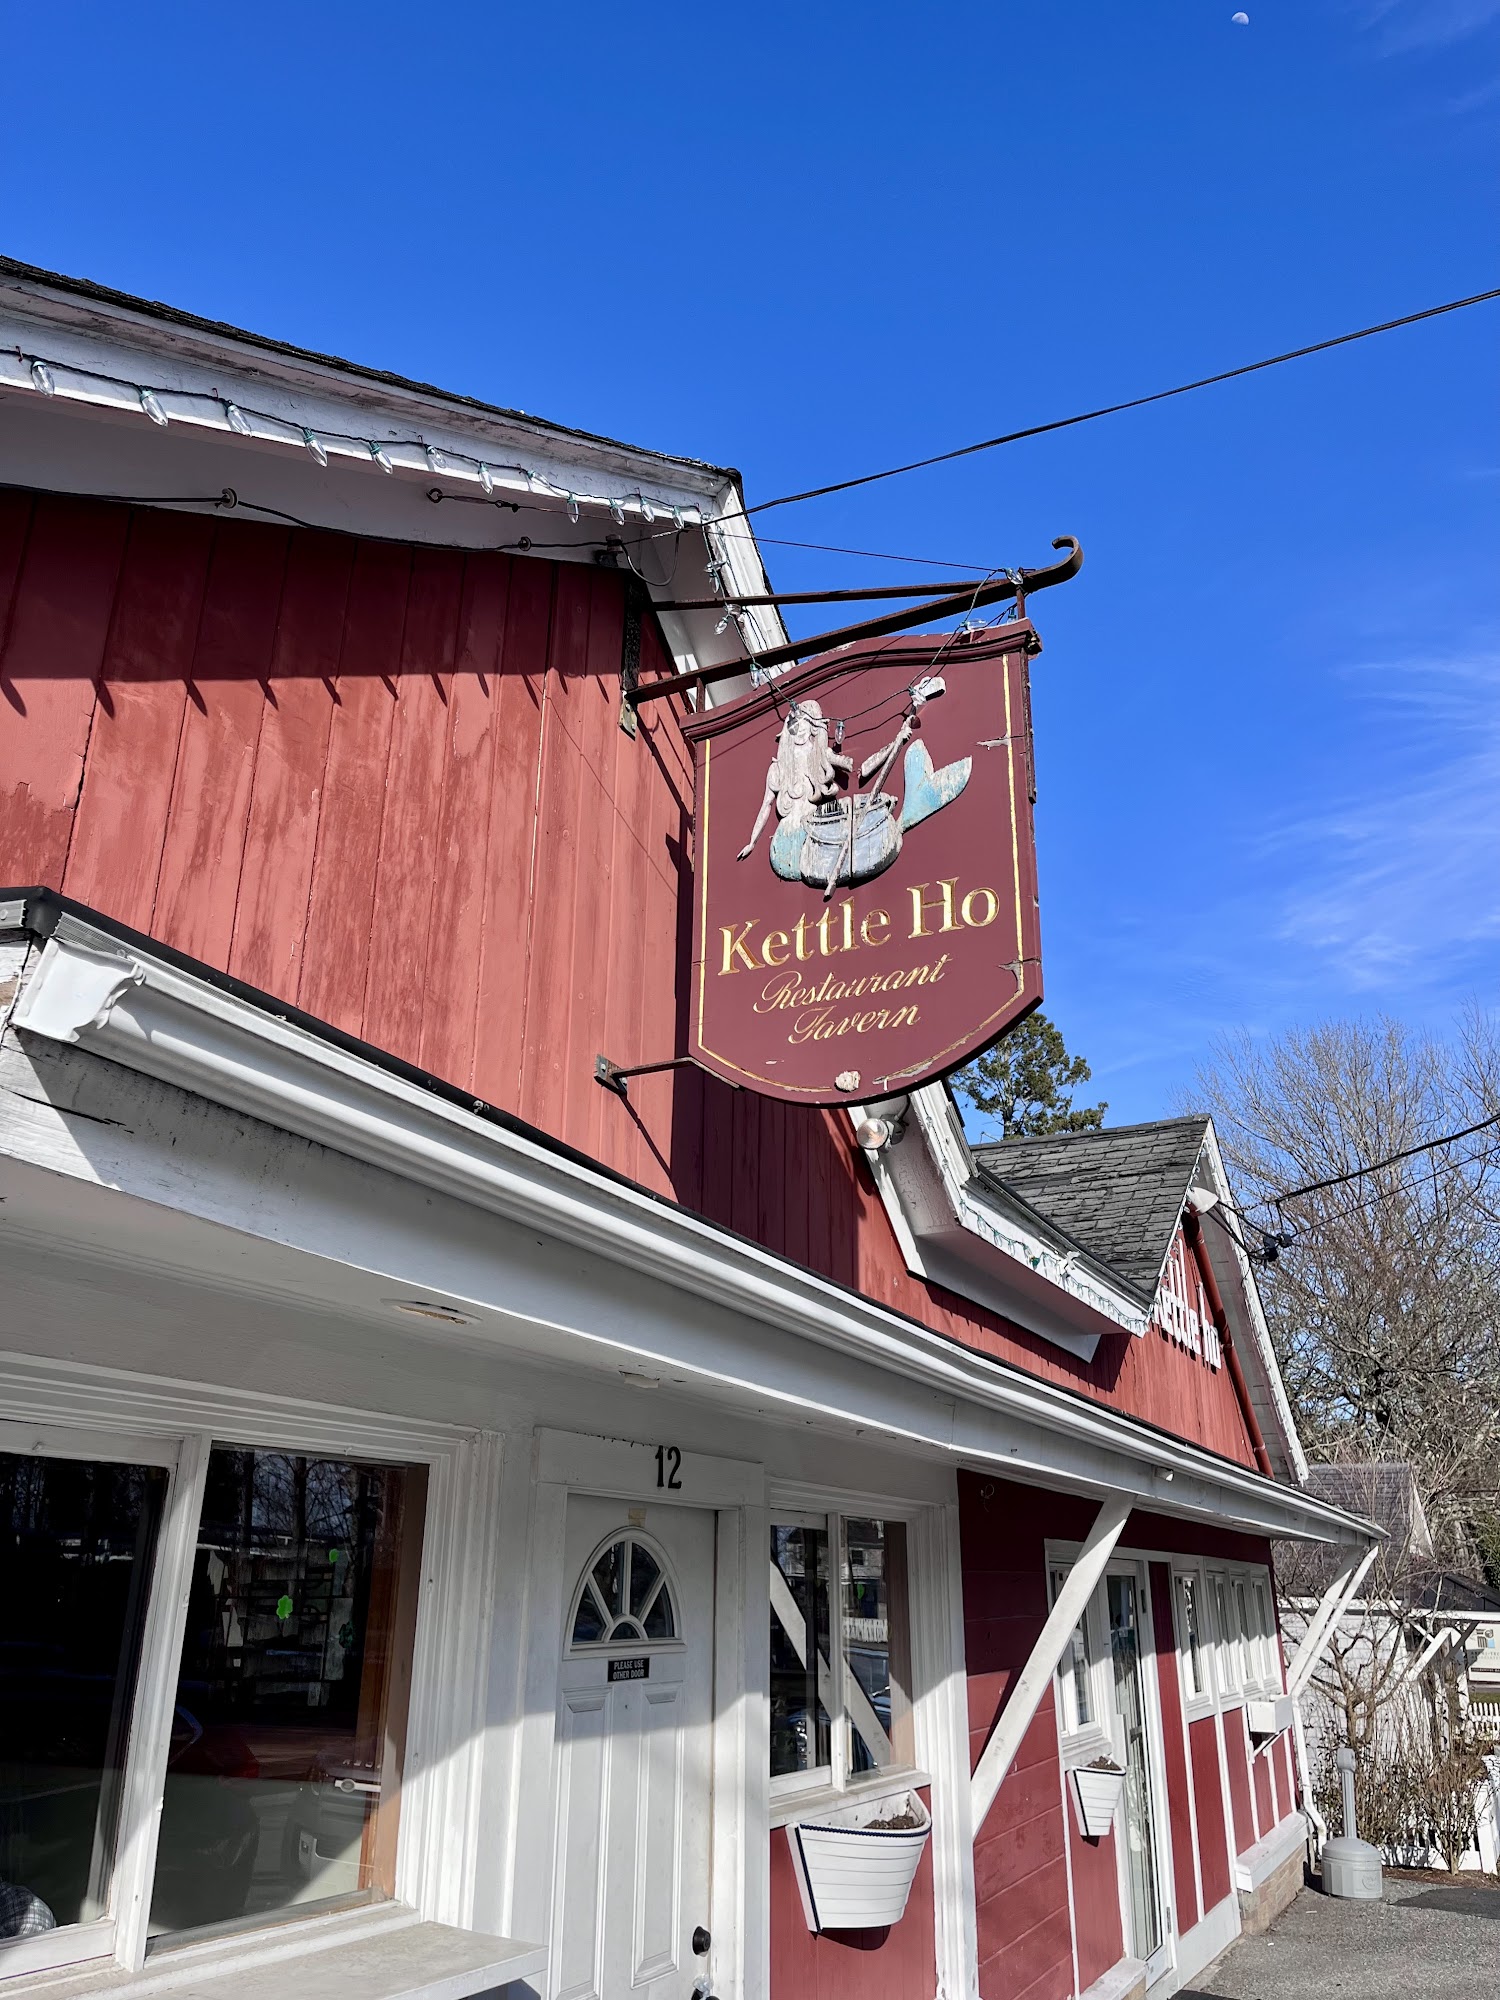 Kettle Ho Restaurant & Taverna